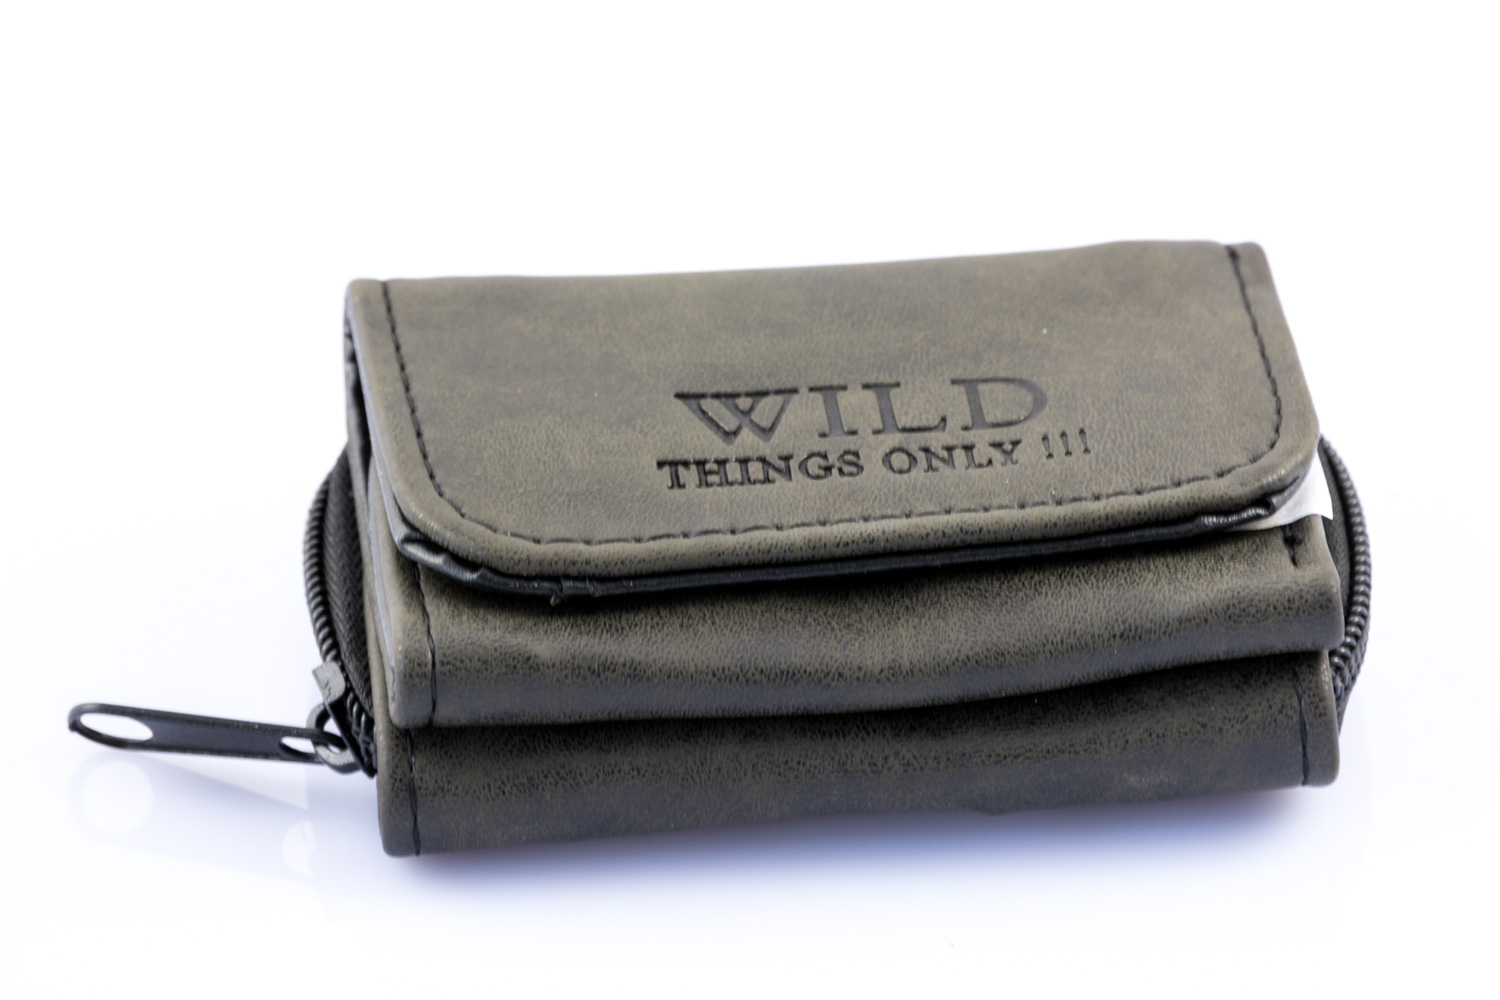 Universal Mikro Peněženka Wild Černá